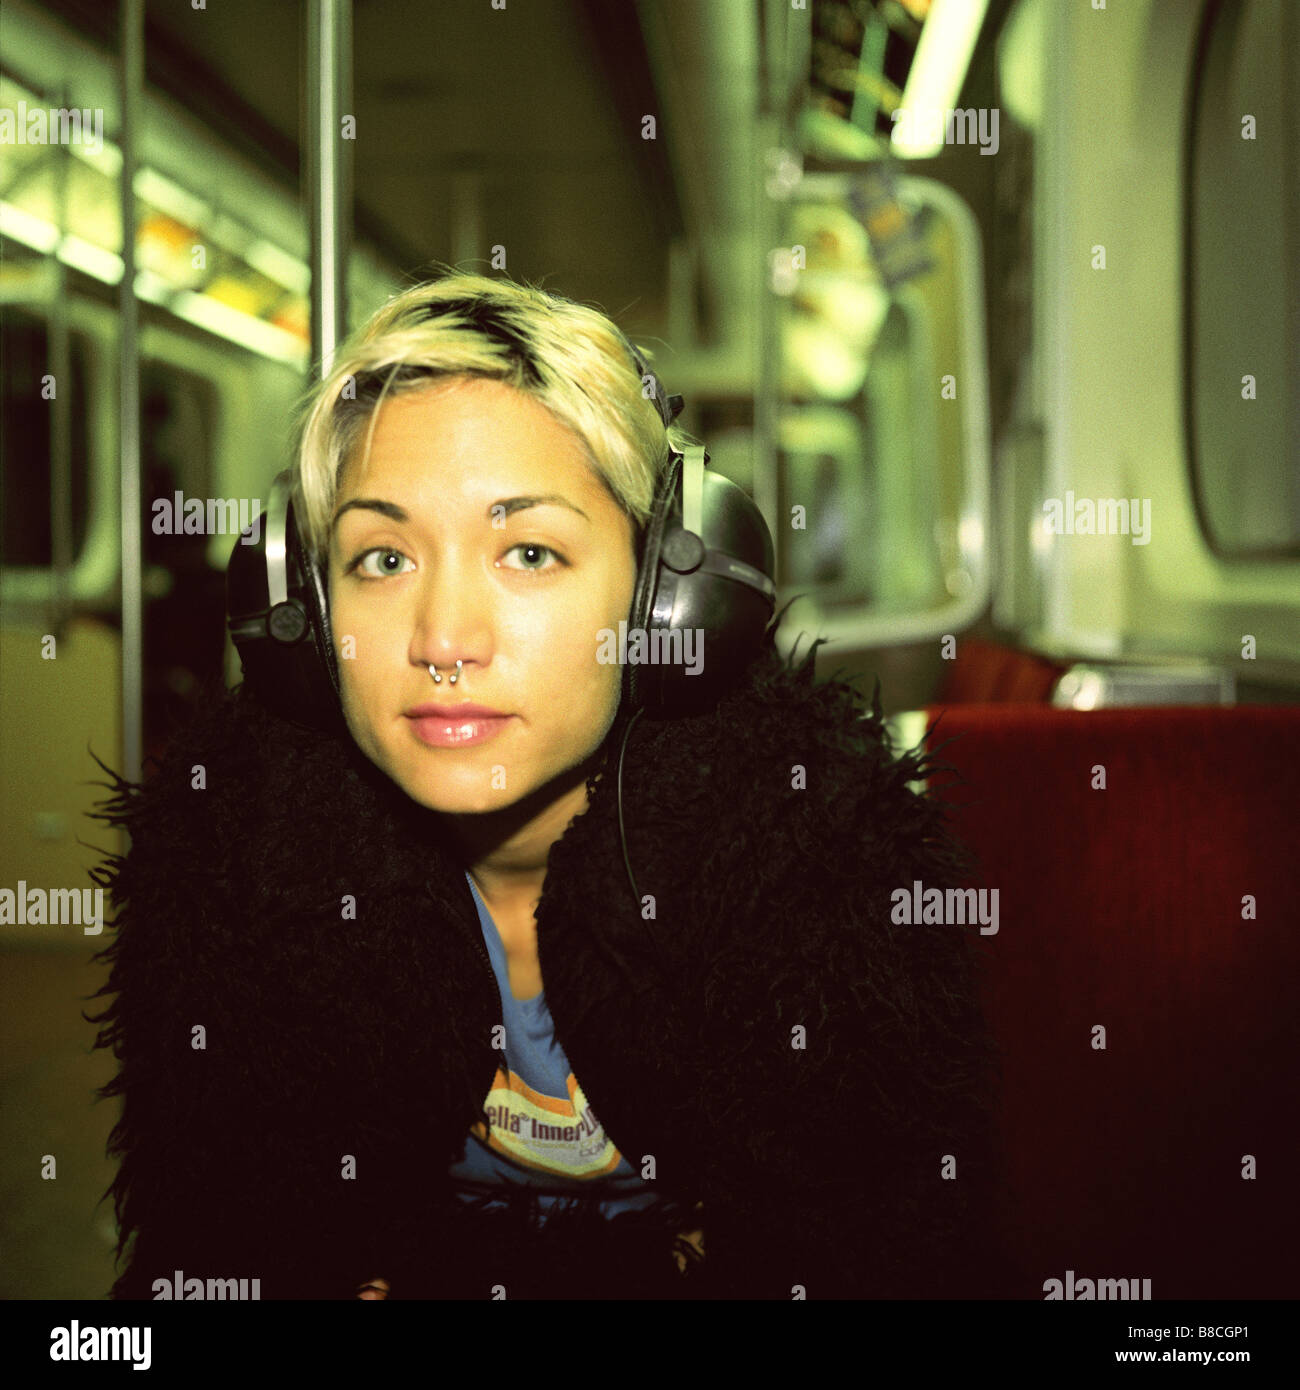 FL6308, Huy Lam; Ritratto giovane donna che indossa le cuffie alla metropolitana Foto Stock